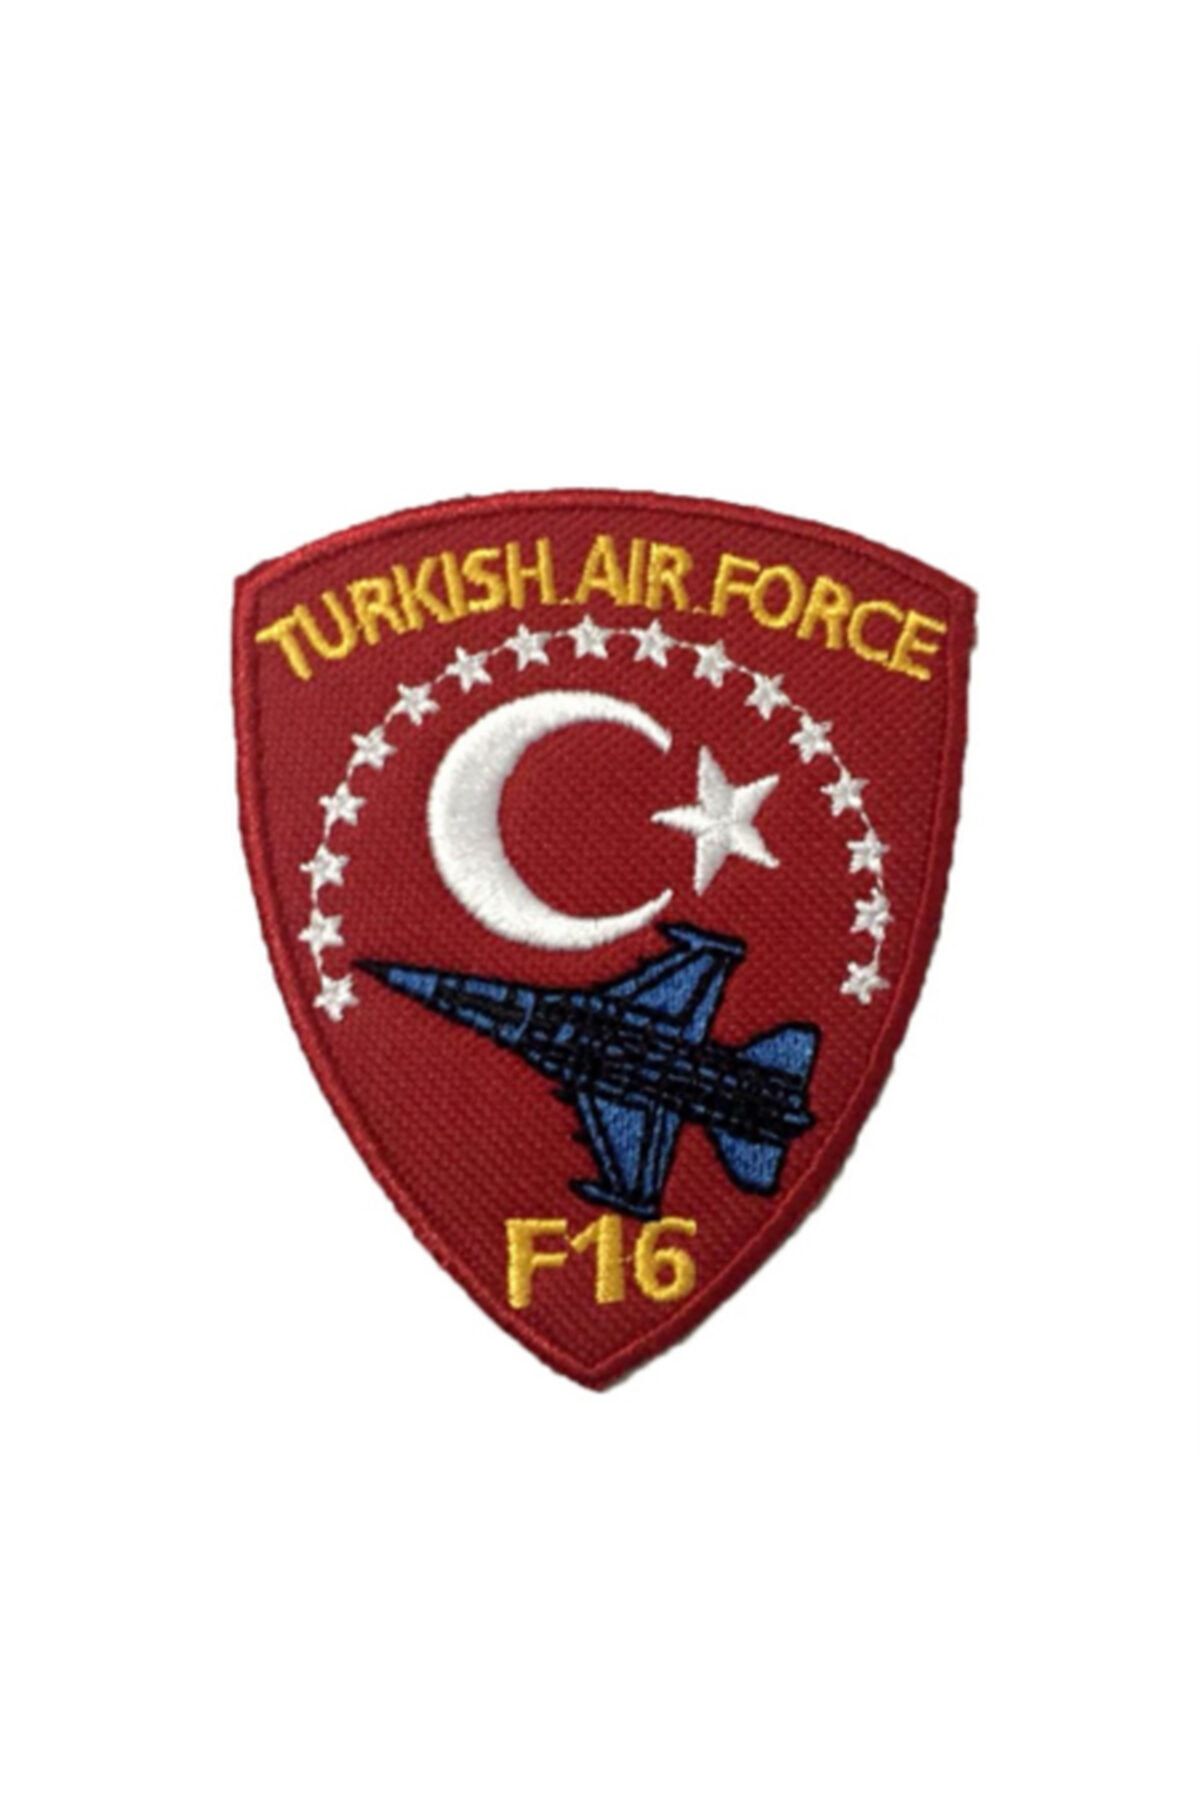 X-SHOP Turkish Air Force F 16 Patches Arma Peç Ve Kot Yamaları